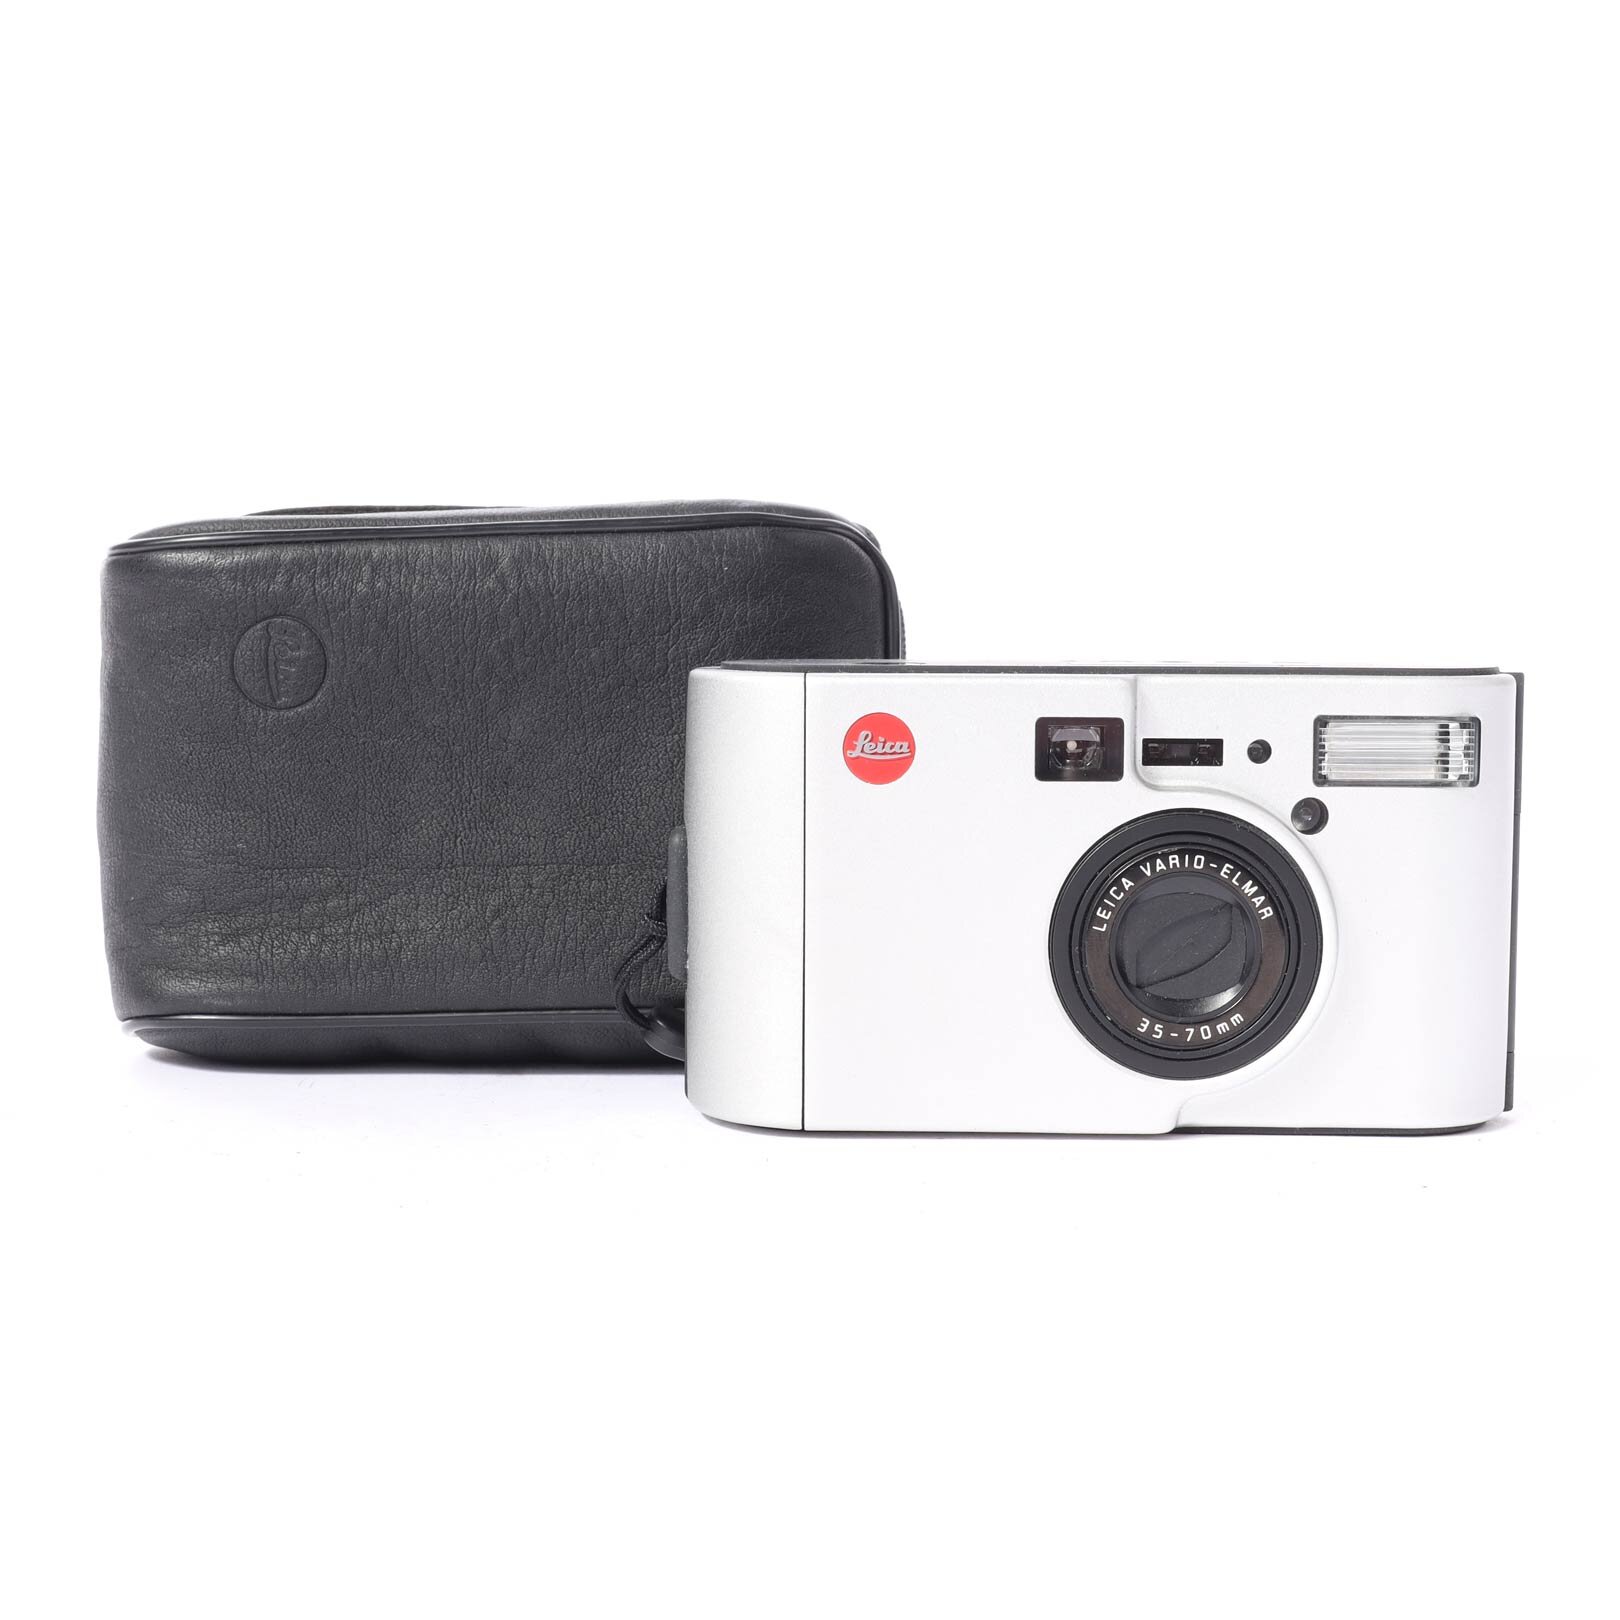 Leica Leitz C2 Vario-Elmar 35-70mm analoge Kompaktkamera